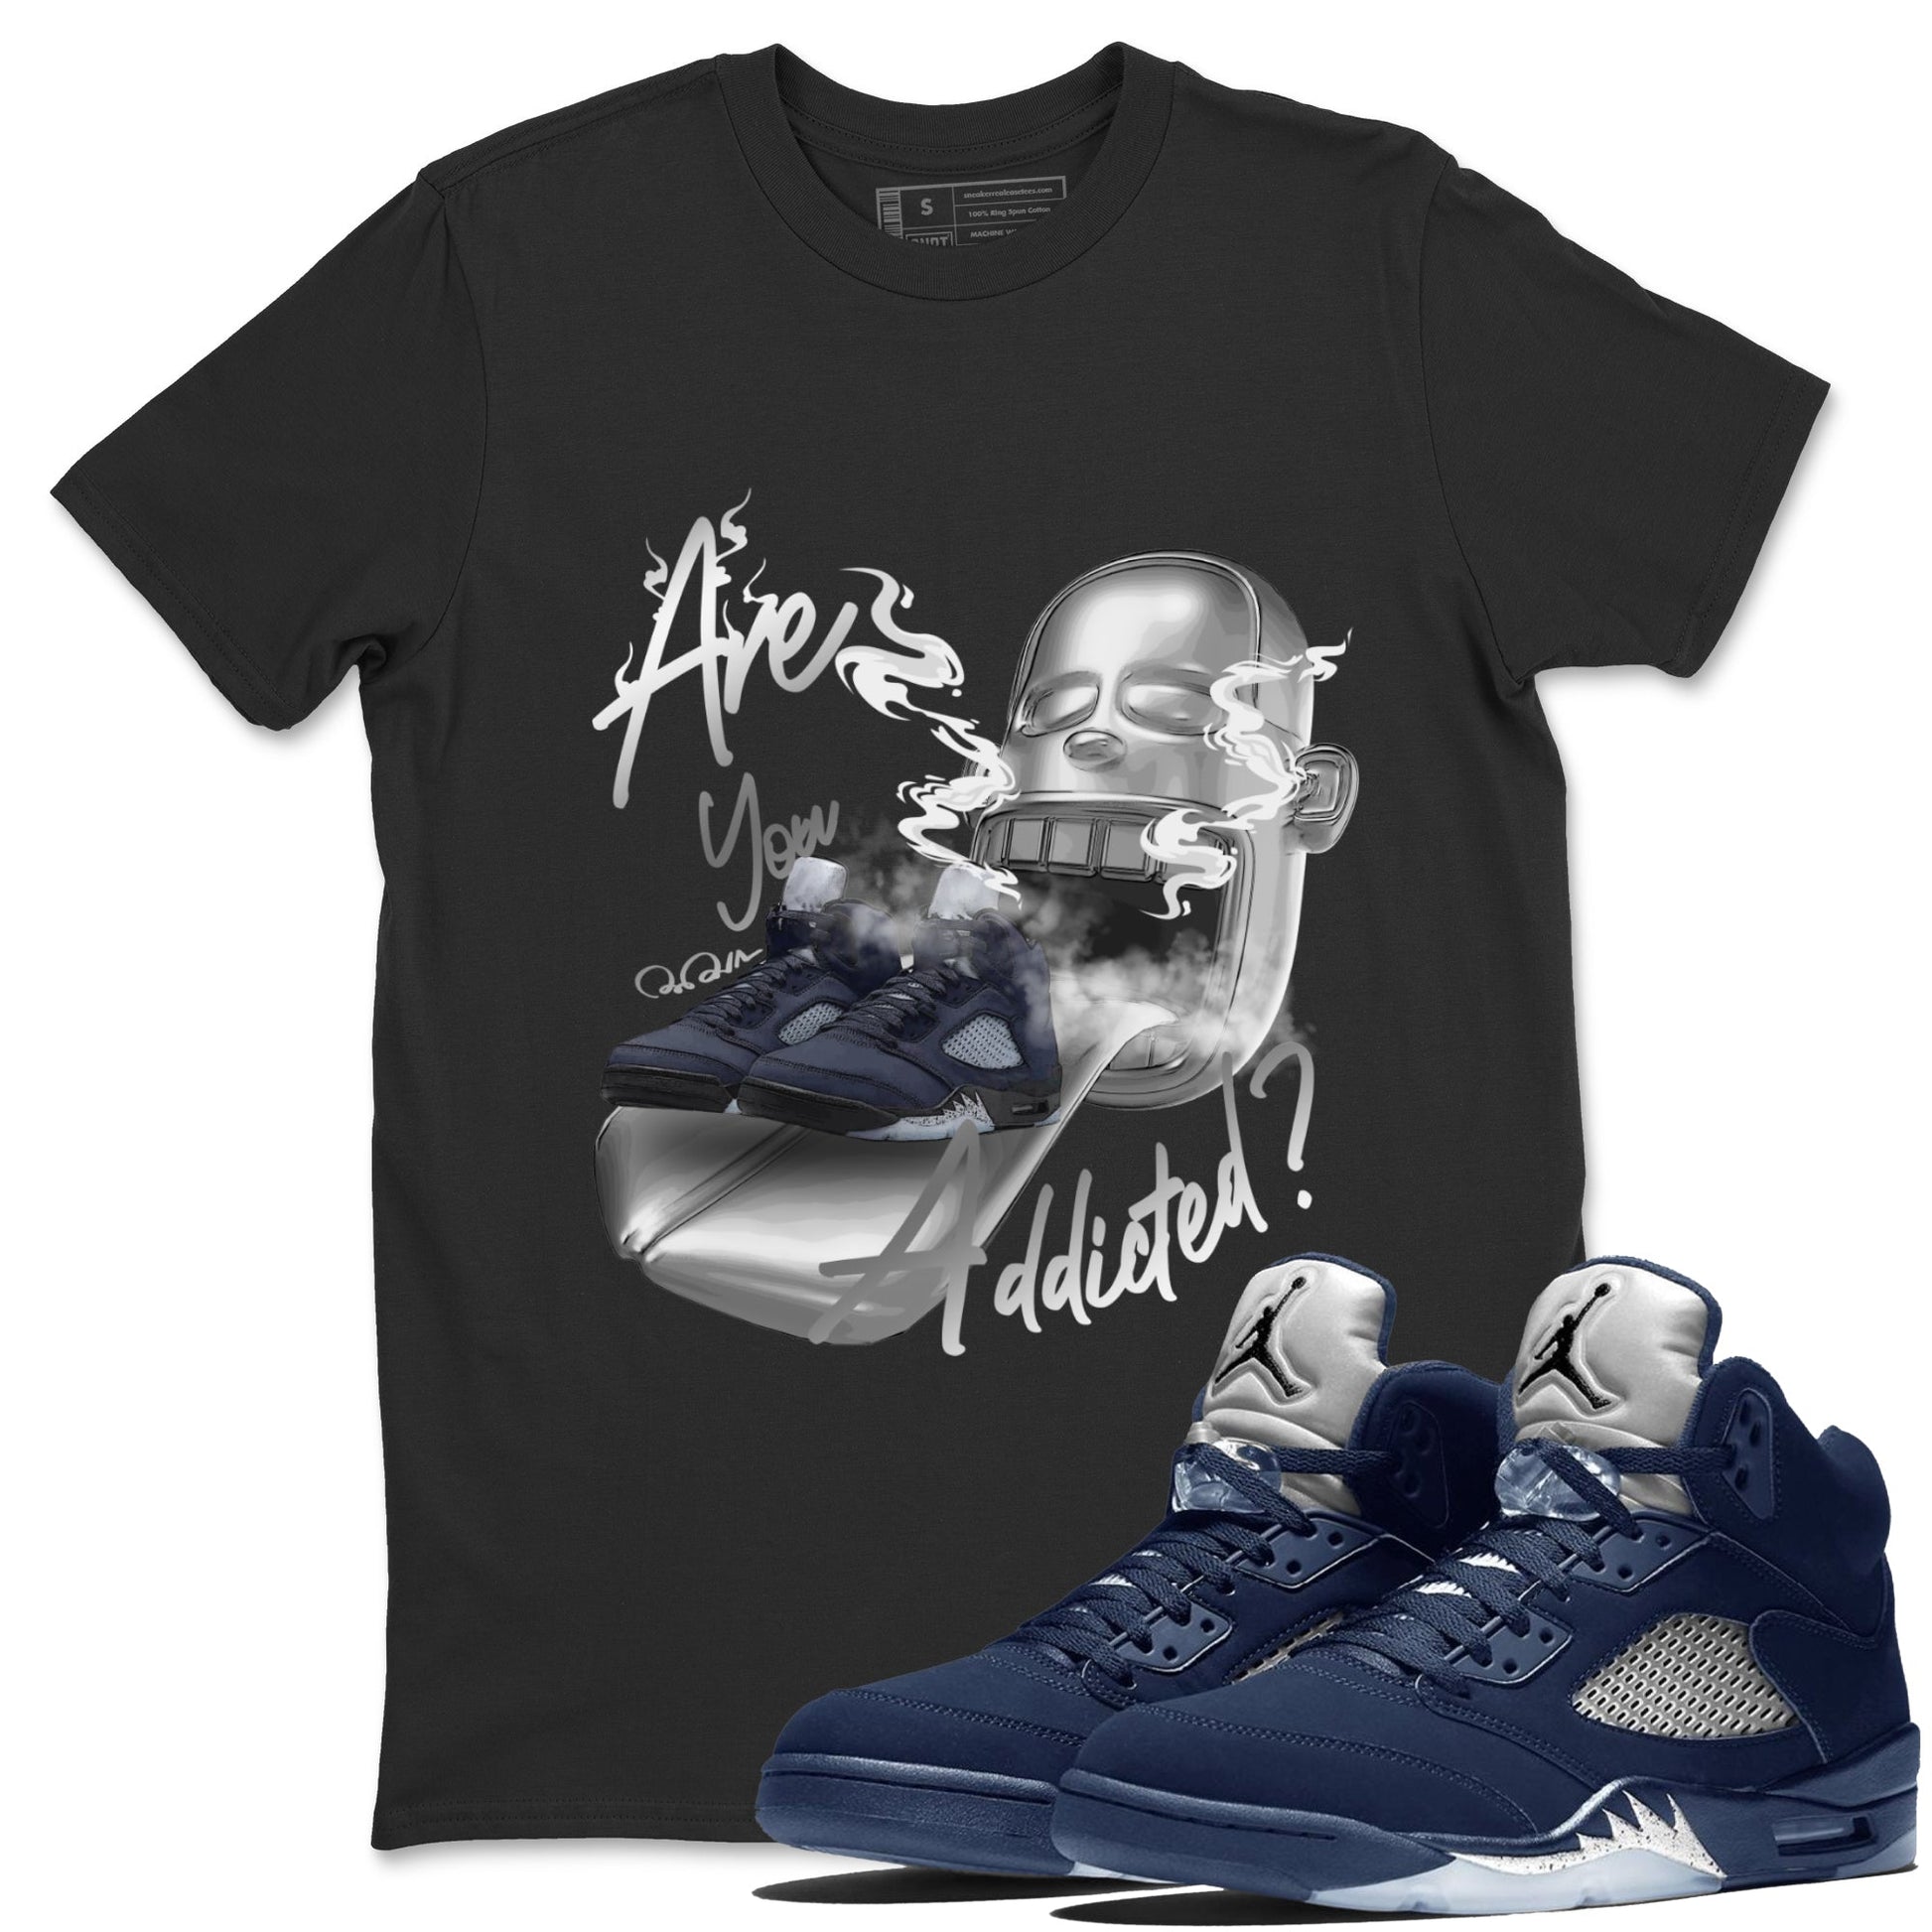 Air Jordan 5 Georgetown Sneaker Match Tees Are You Addicted Sneaker Tees AJ5 Georgetown Sneaker Release Tees Unisex Shirts Black 1